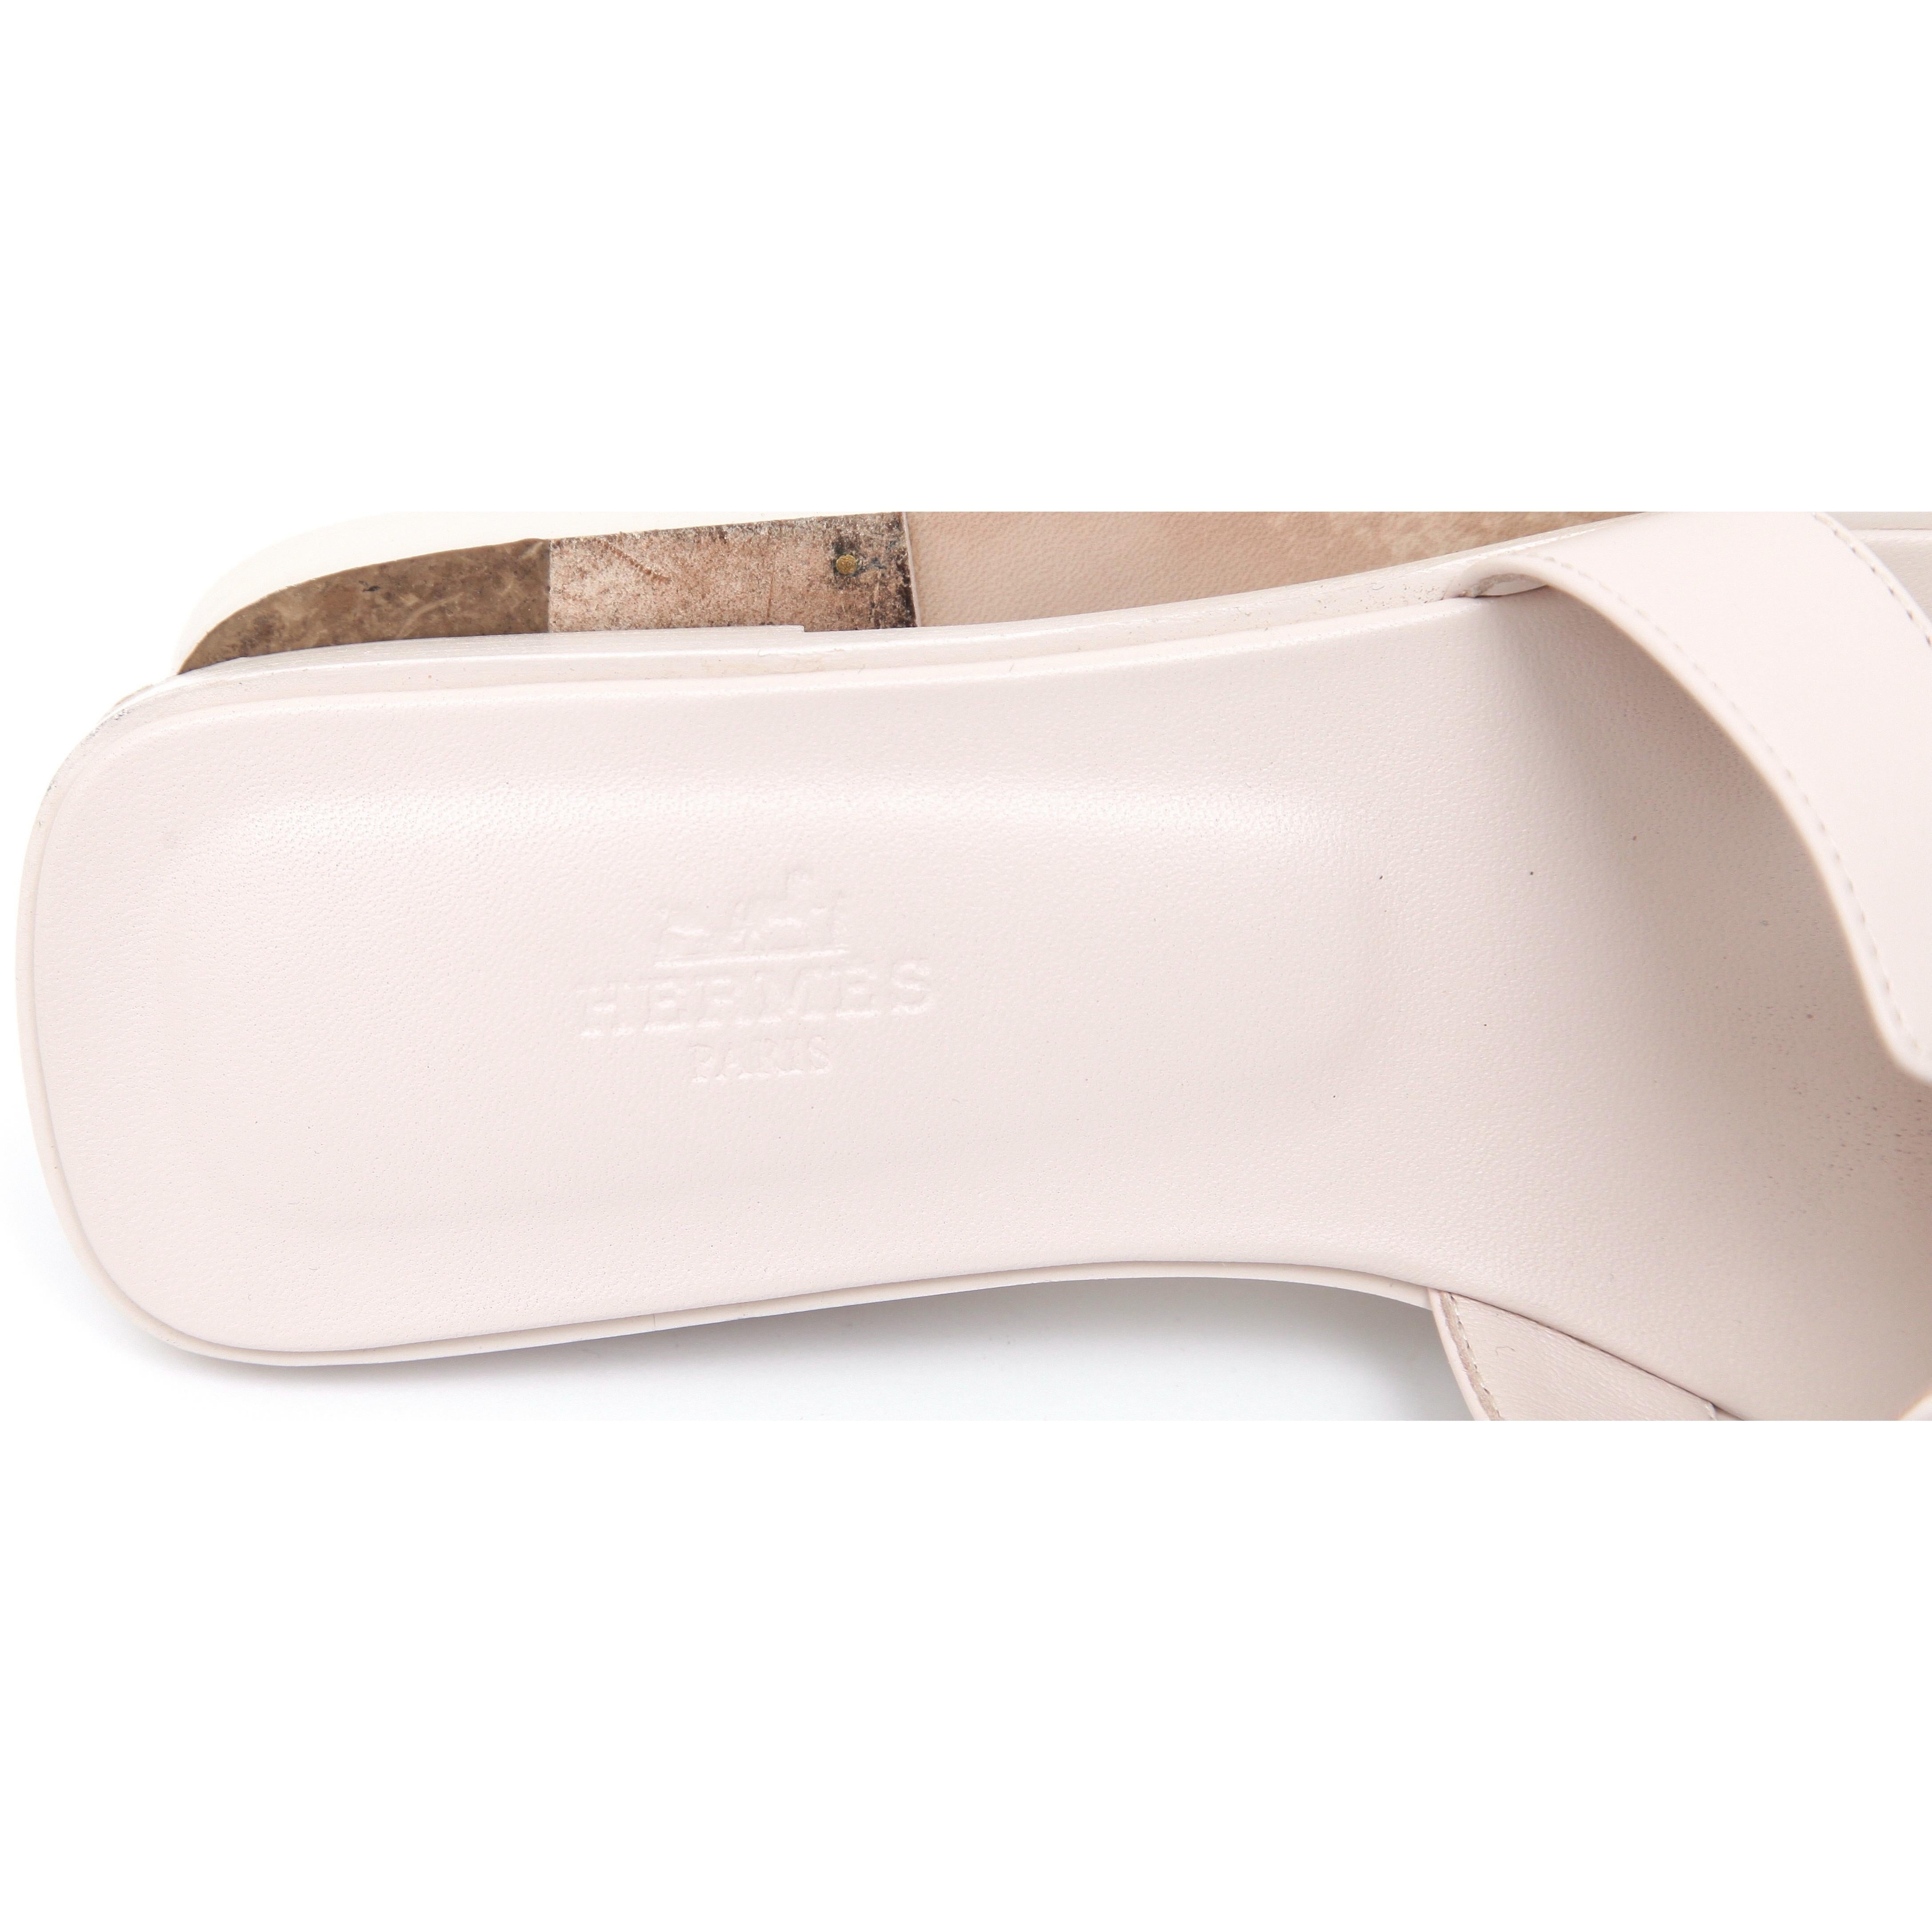 HERMES Oran Sandal Rose Petale Calfskin Leather Flat Slide Light Pink Sz 38 In Excellent Condition For Sale In Hollywood, FL